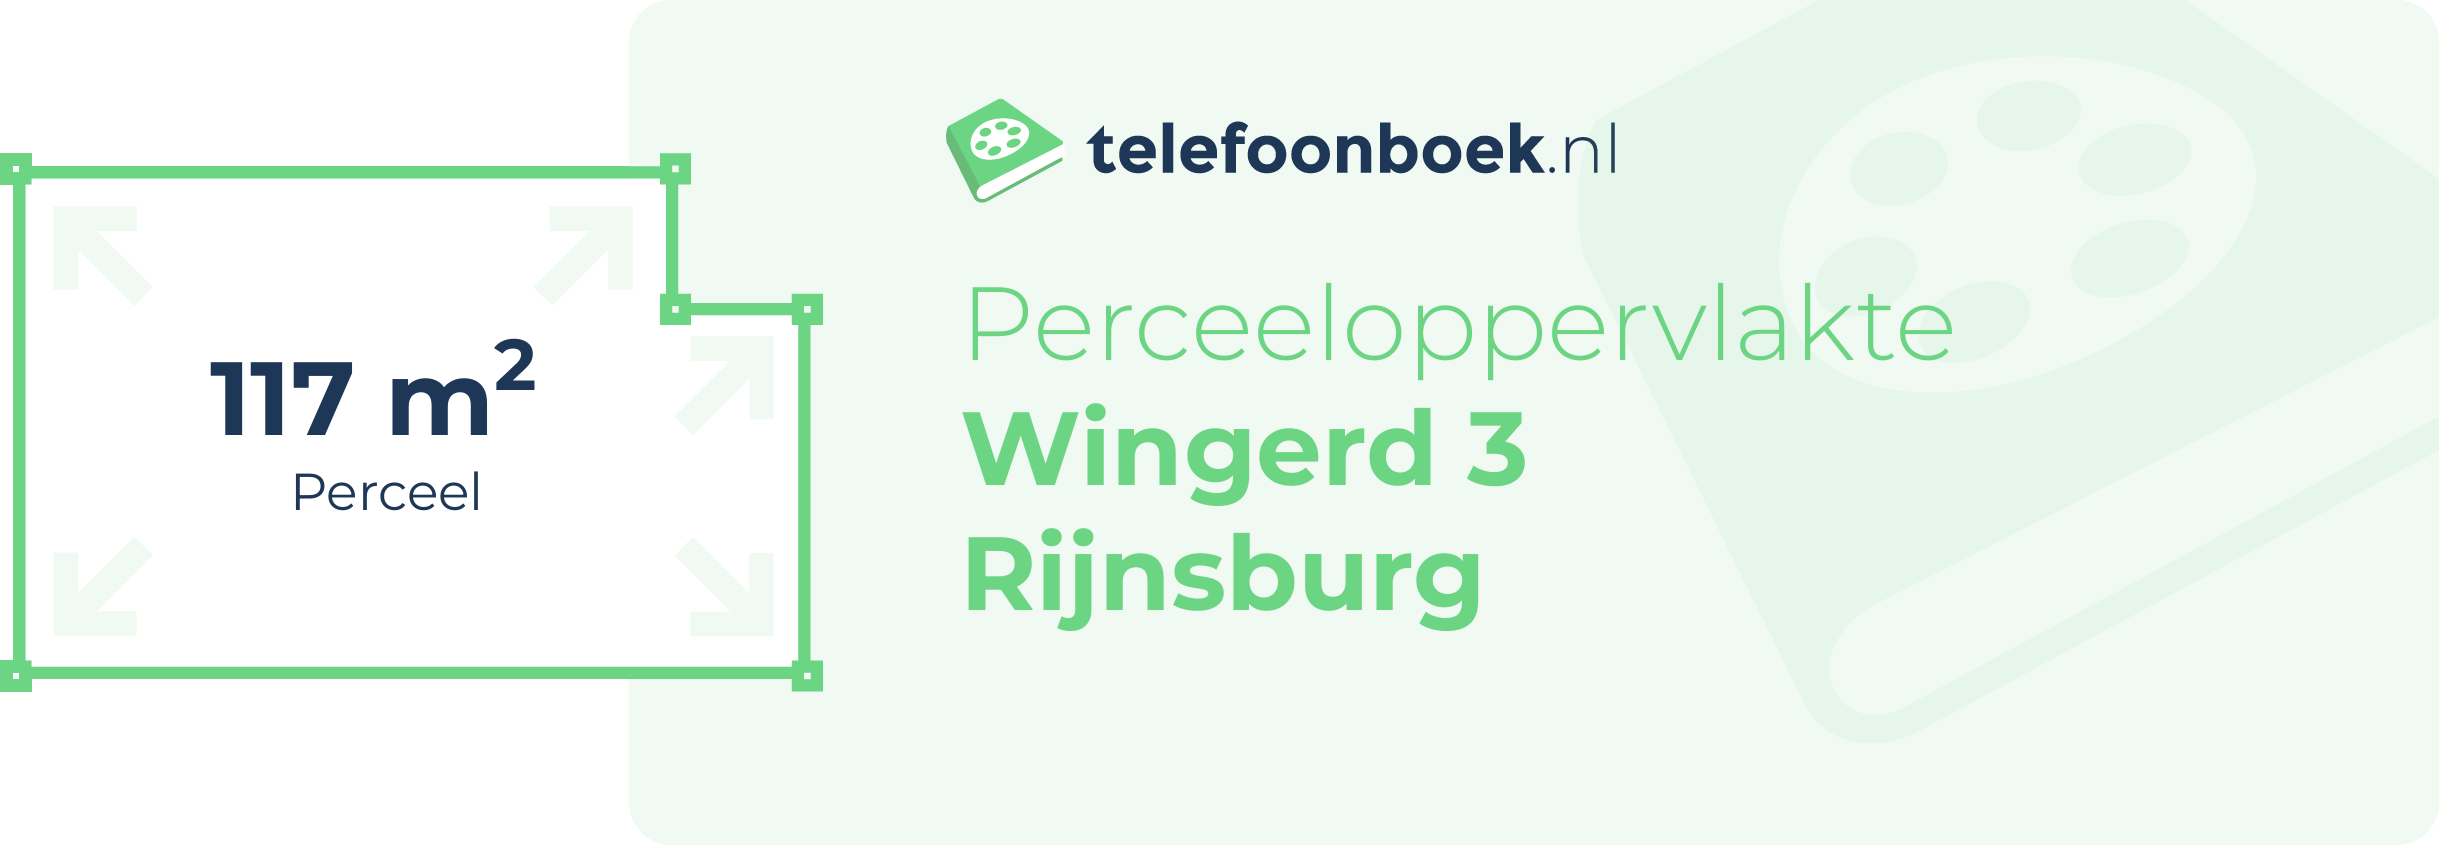 Perceeloppervlakte Wingerd 3 Rijnsburg